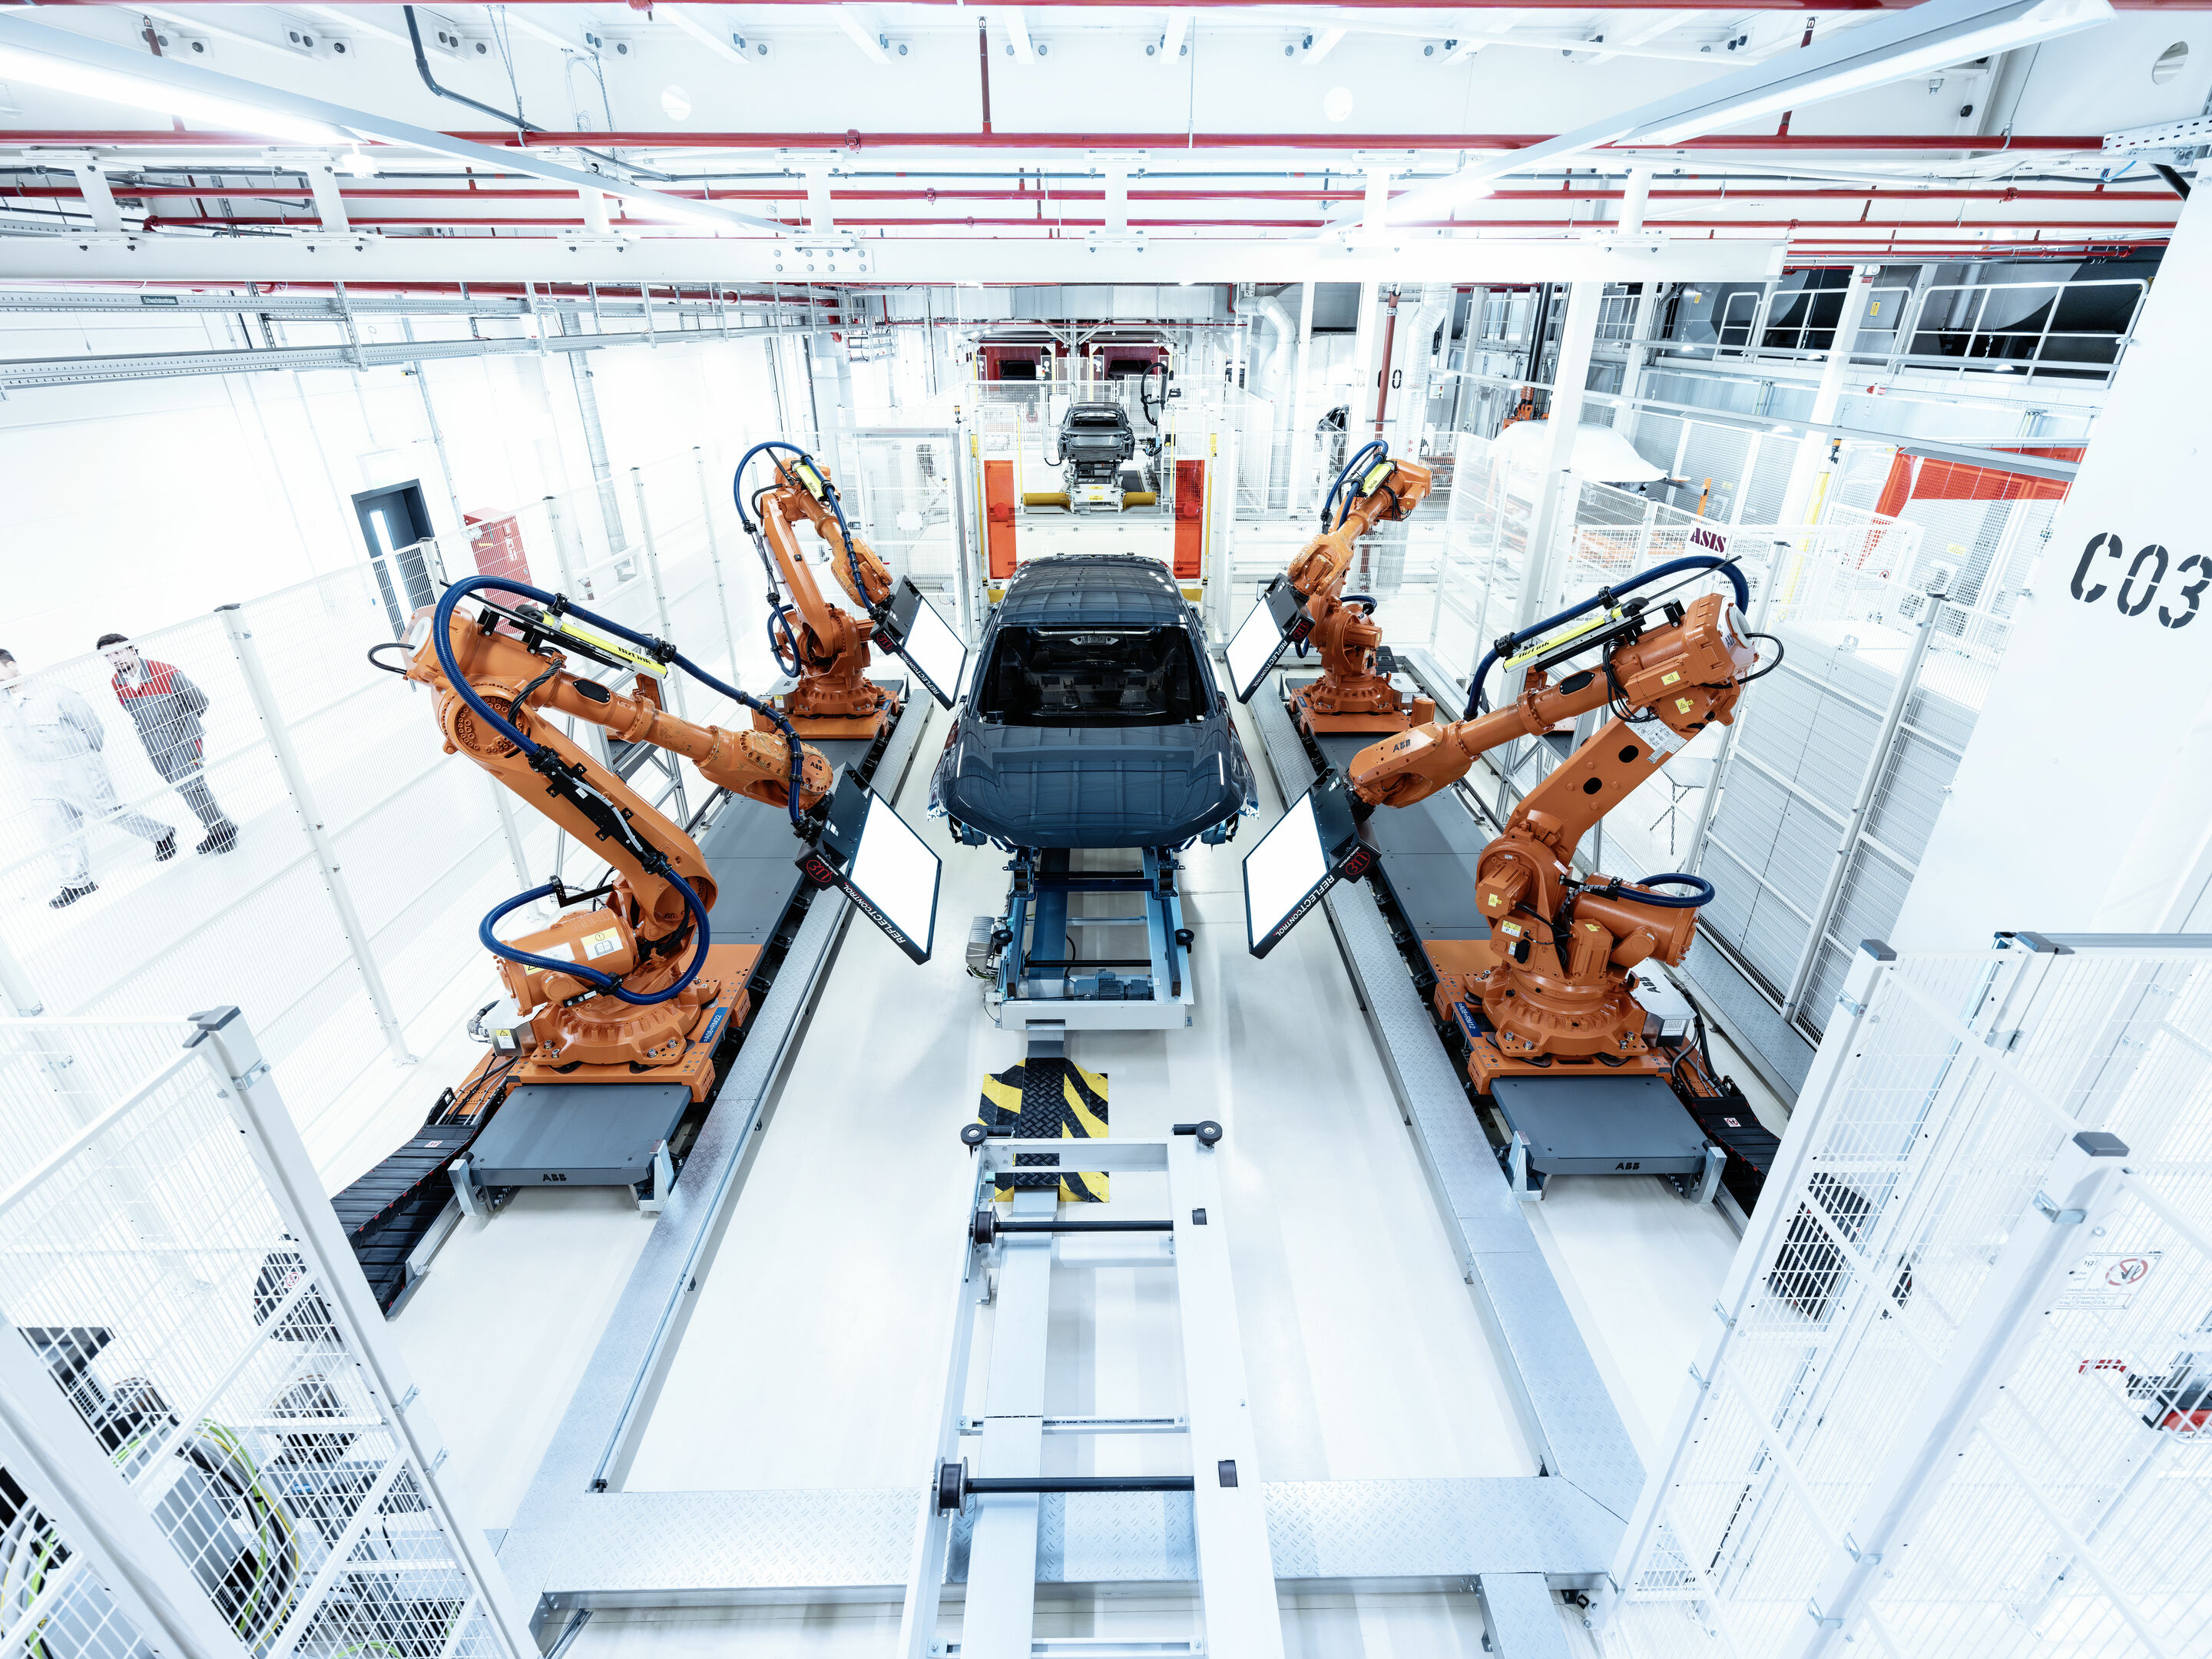 Production Audi Q6 e-tron at the Ingolstadt site